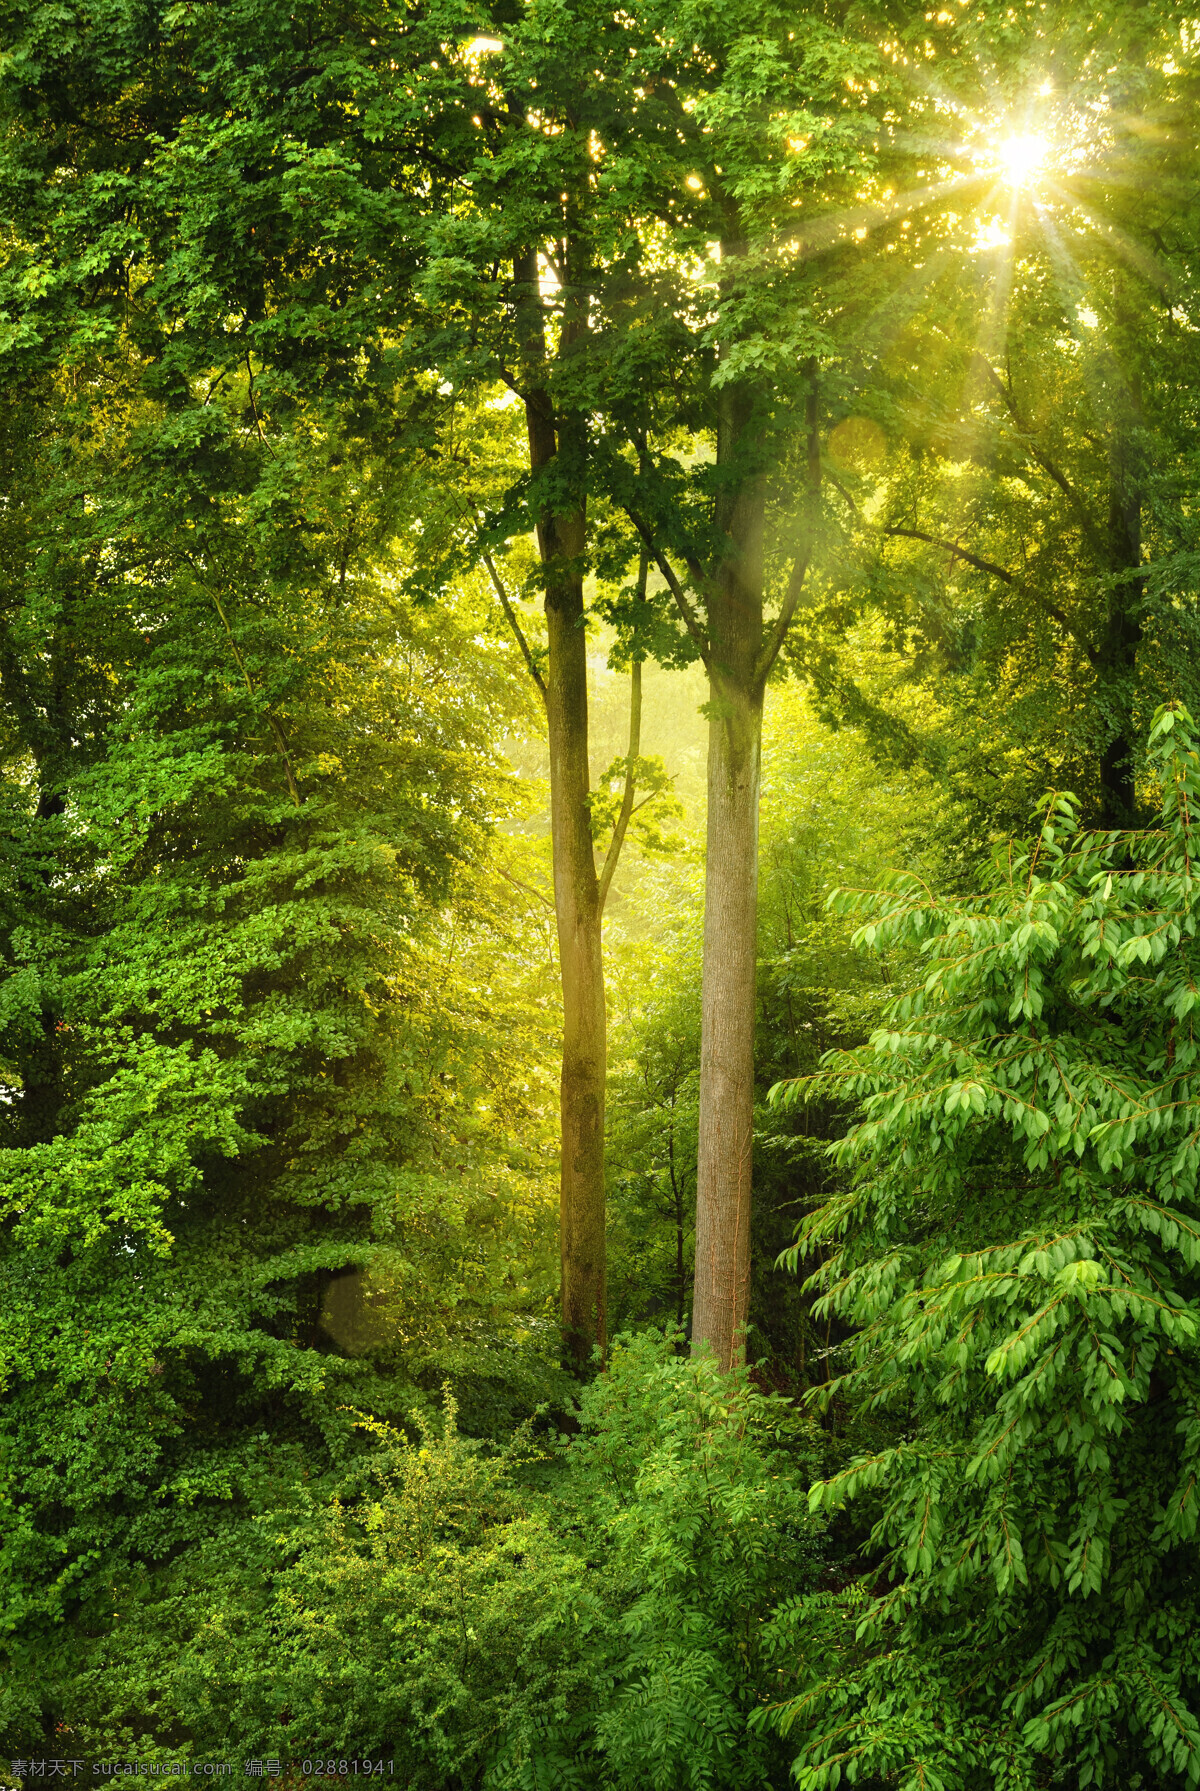 美丽 树林 景色 高清 叶子 春季 清晨 阳光 风景图片 清晨阳光 树林风景 树木风景 美丽风景 自然风光 美丽景色 风景摄影 美景 花草图片 花的图片 绿色